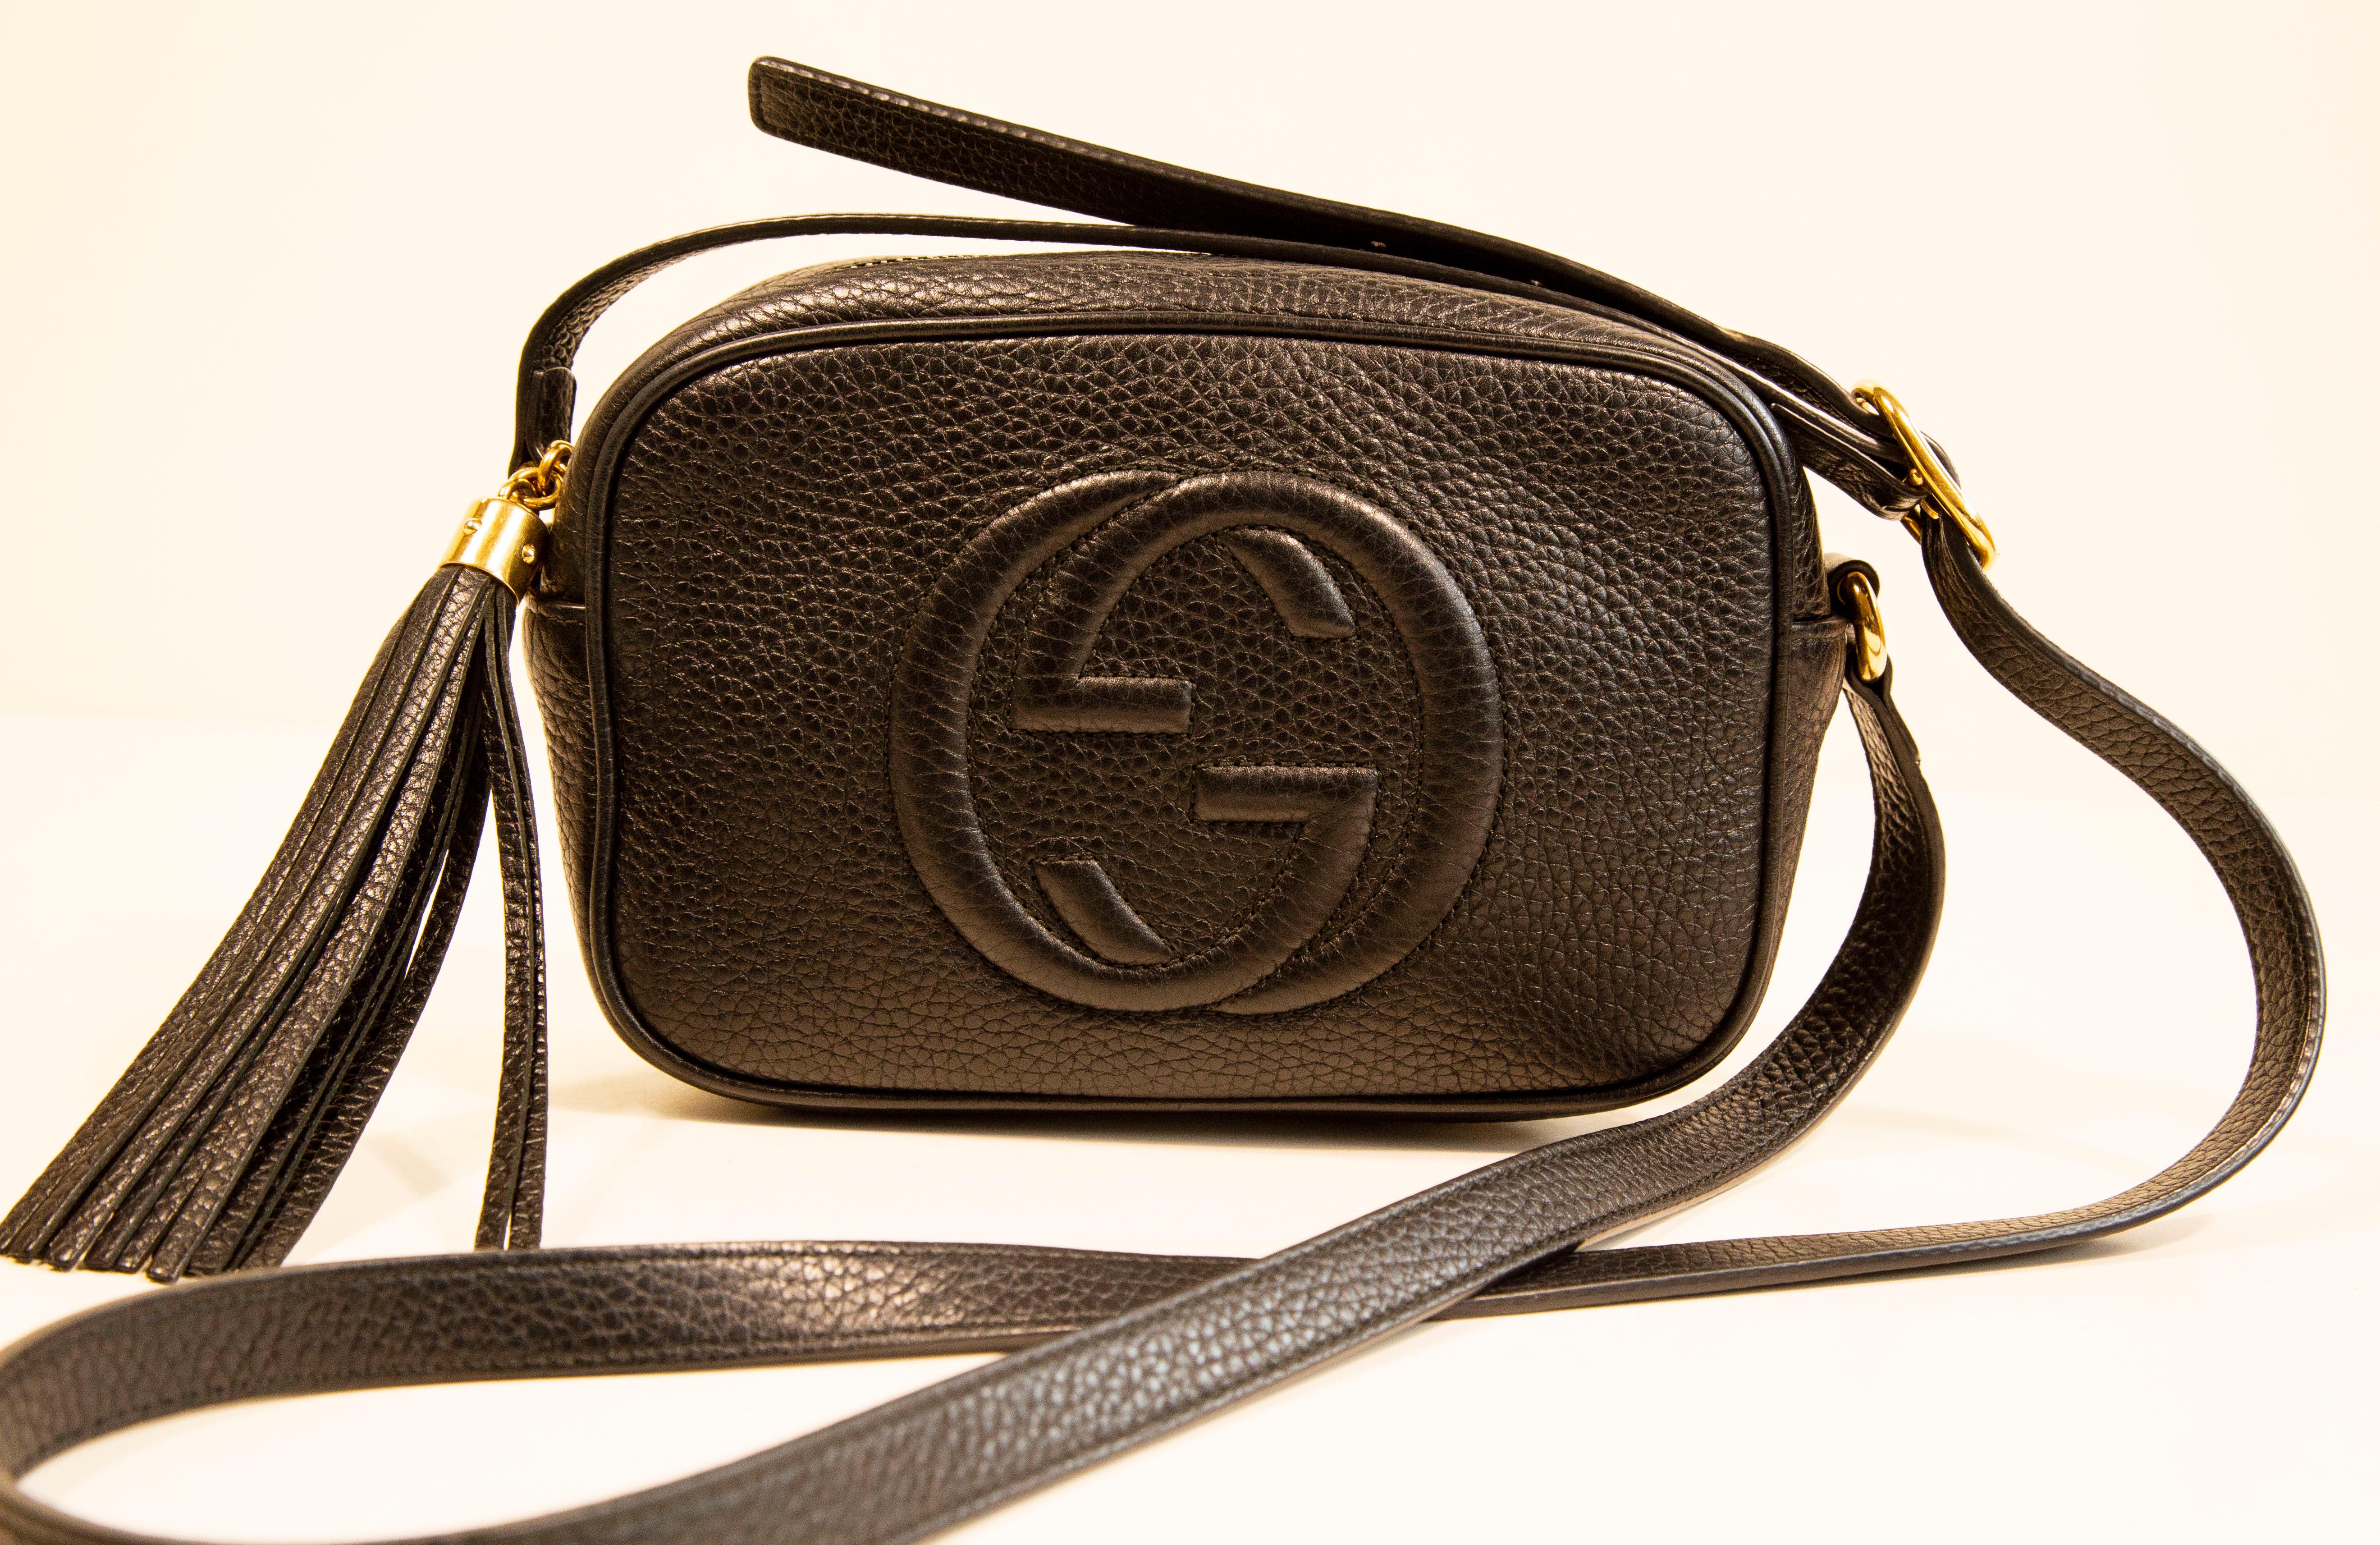 Un mini sac Gucci SOHO en cuir noir et métal doré. La face avant est ornée d'un embossage GG inversé. L'intérieur est doublé de tissu synthétique noir et comporte un compartiment.
La bandoulière est réglable en longueur (max. 120 cm). Le sac est en